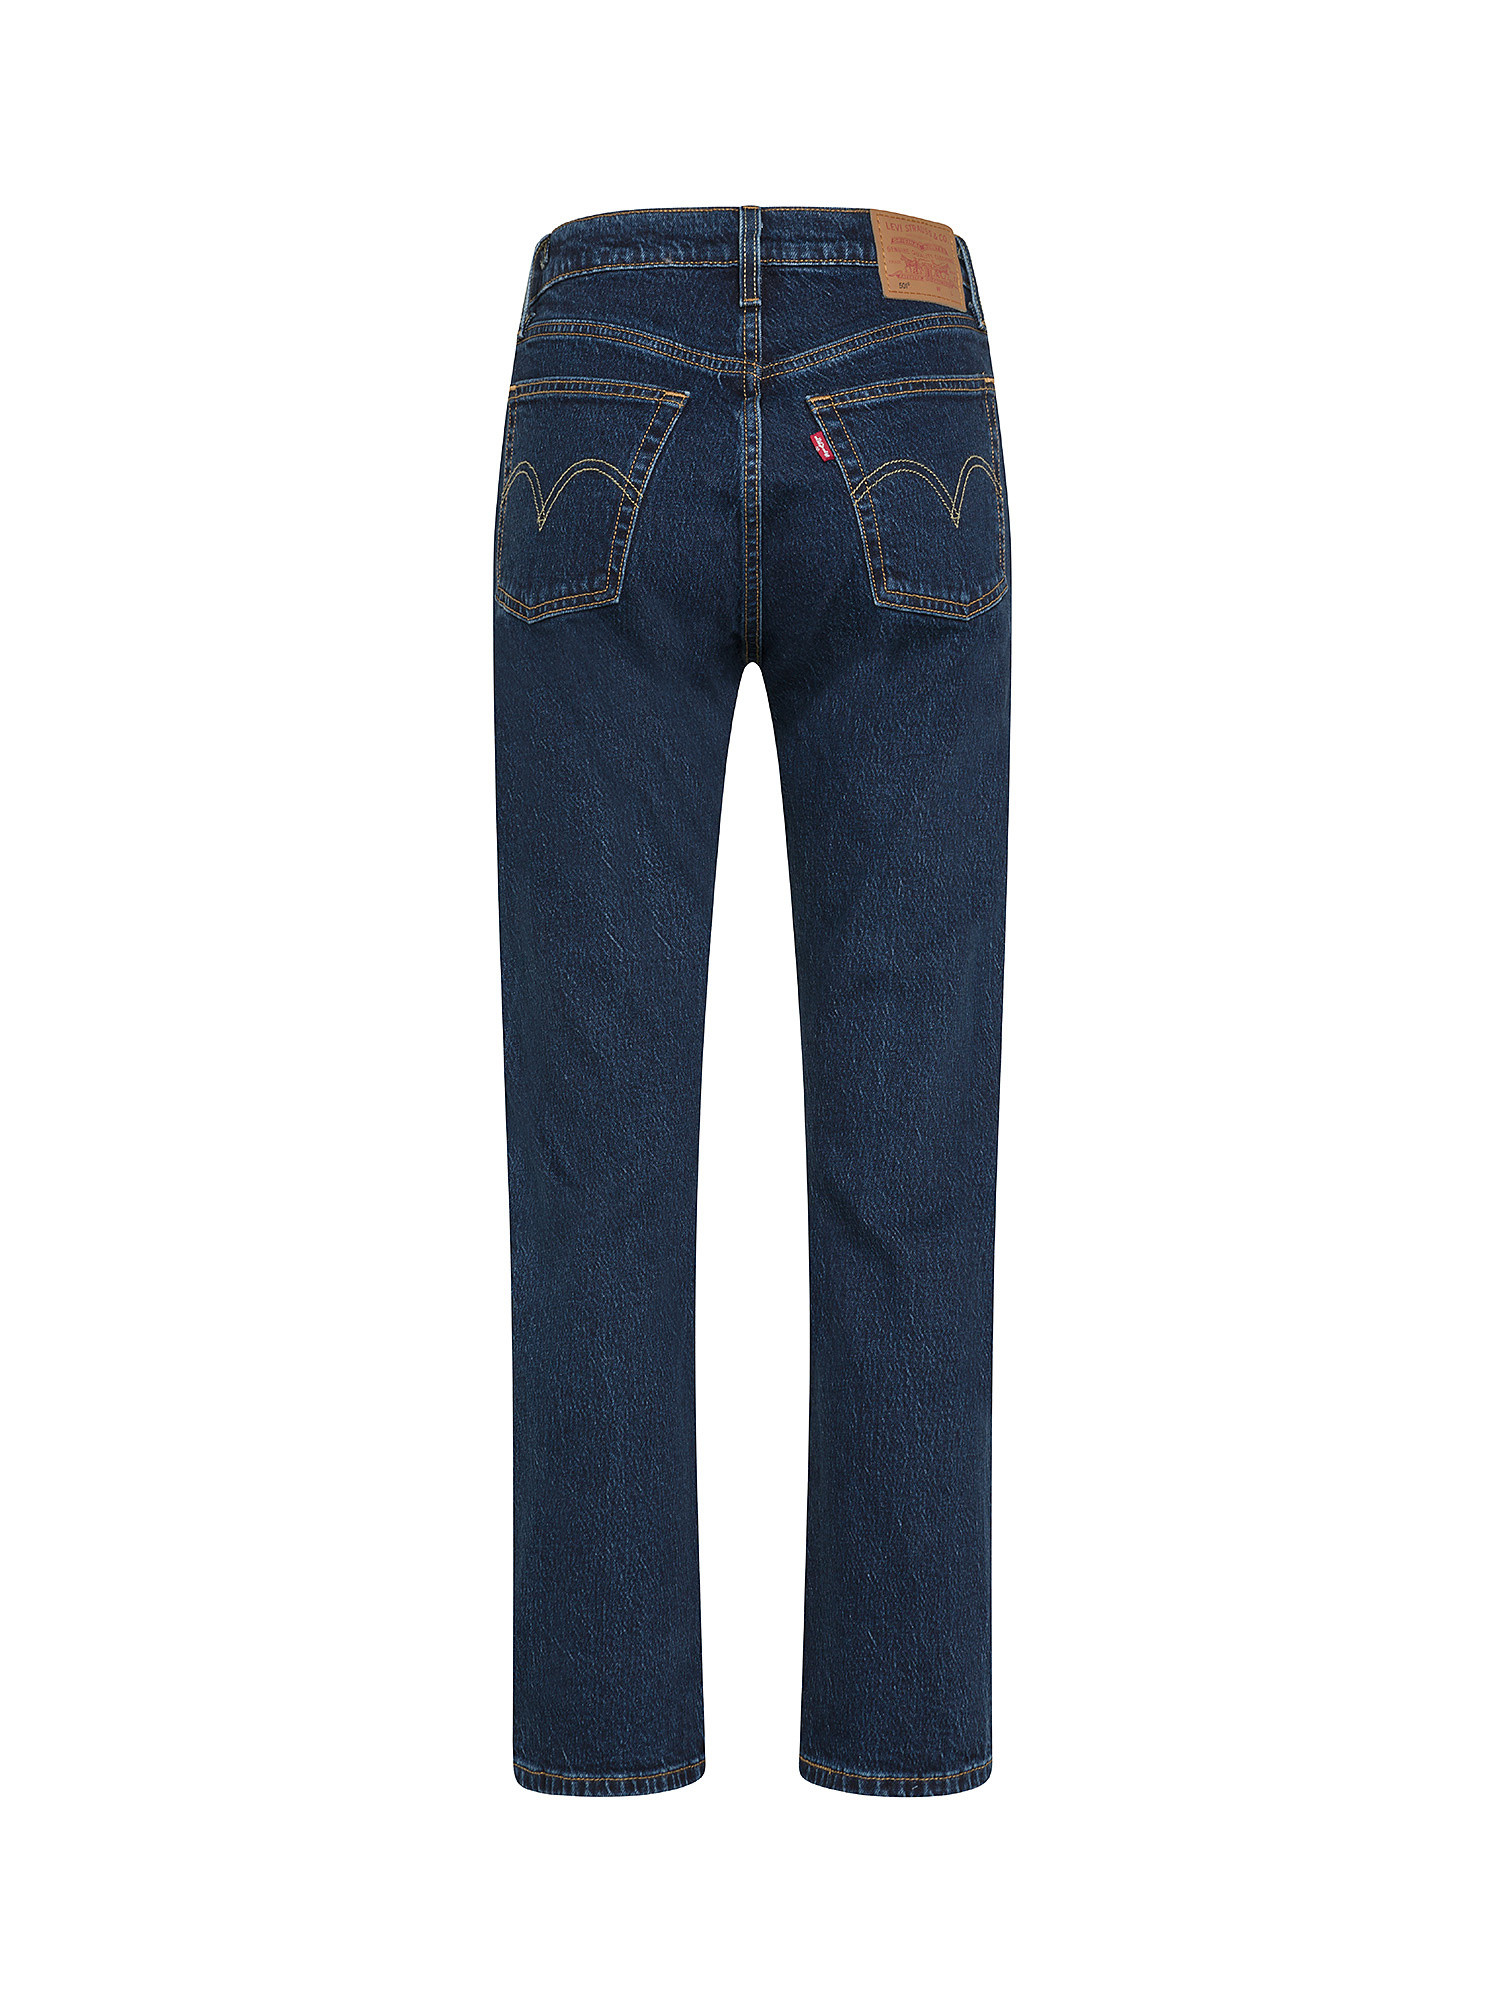 Levi's - original 501® cropped jeans, Denim, large image number 1